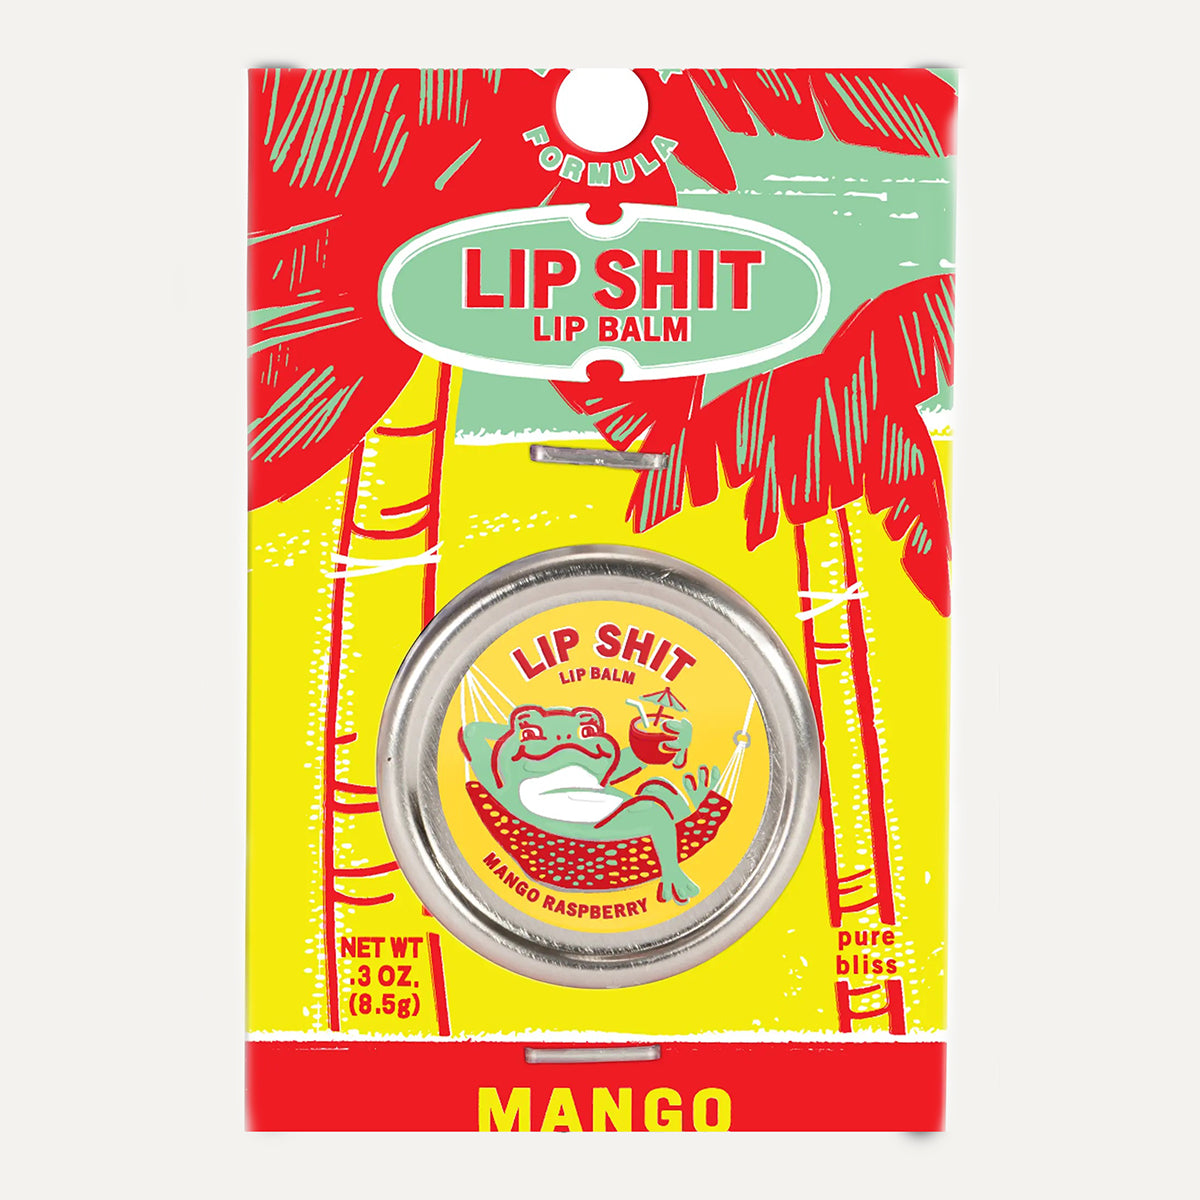 Incognito Mango Raspberry Lip Shit Lip Balm